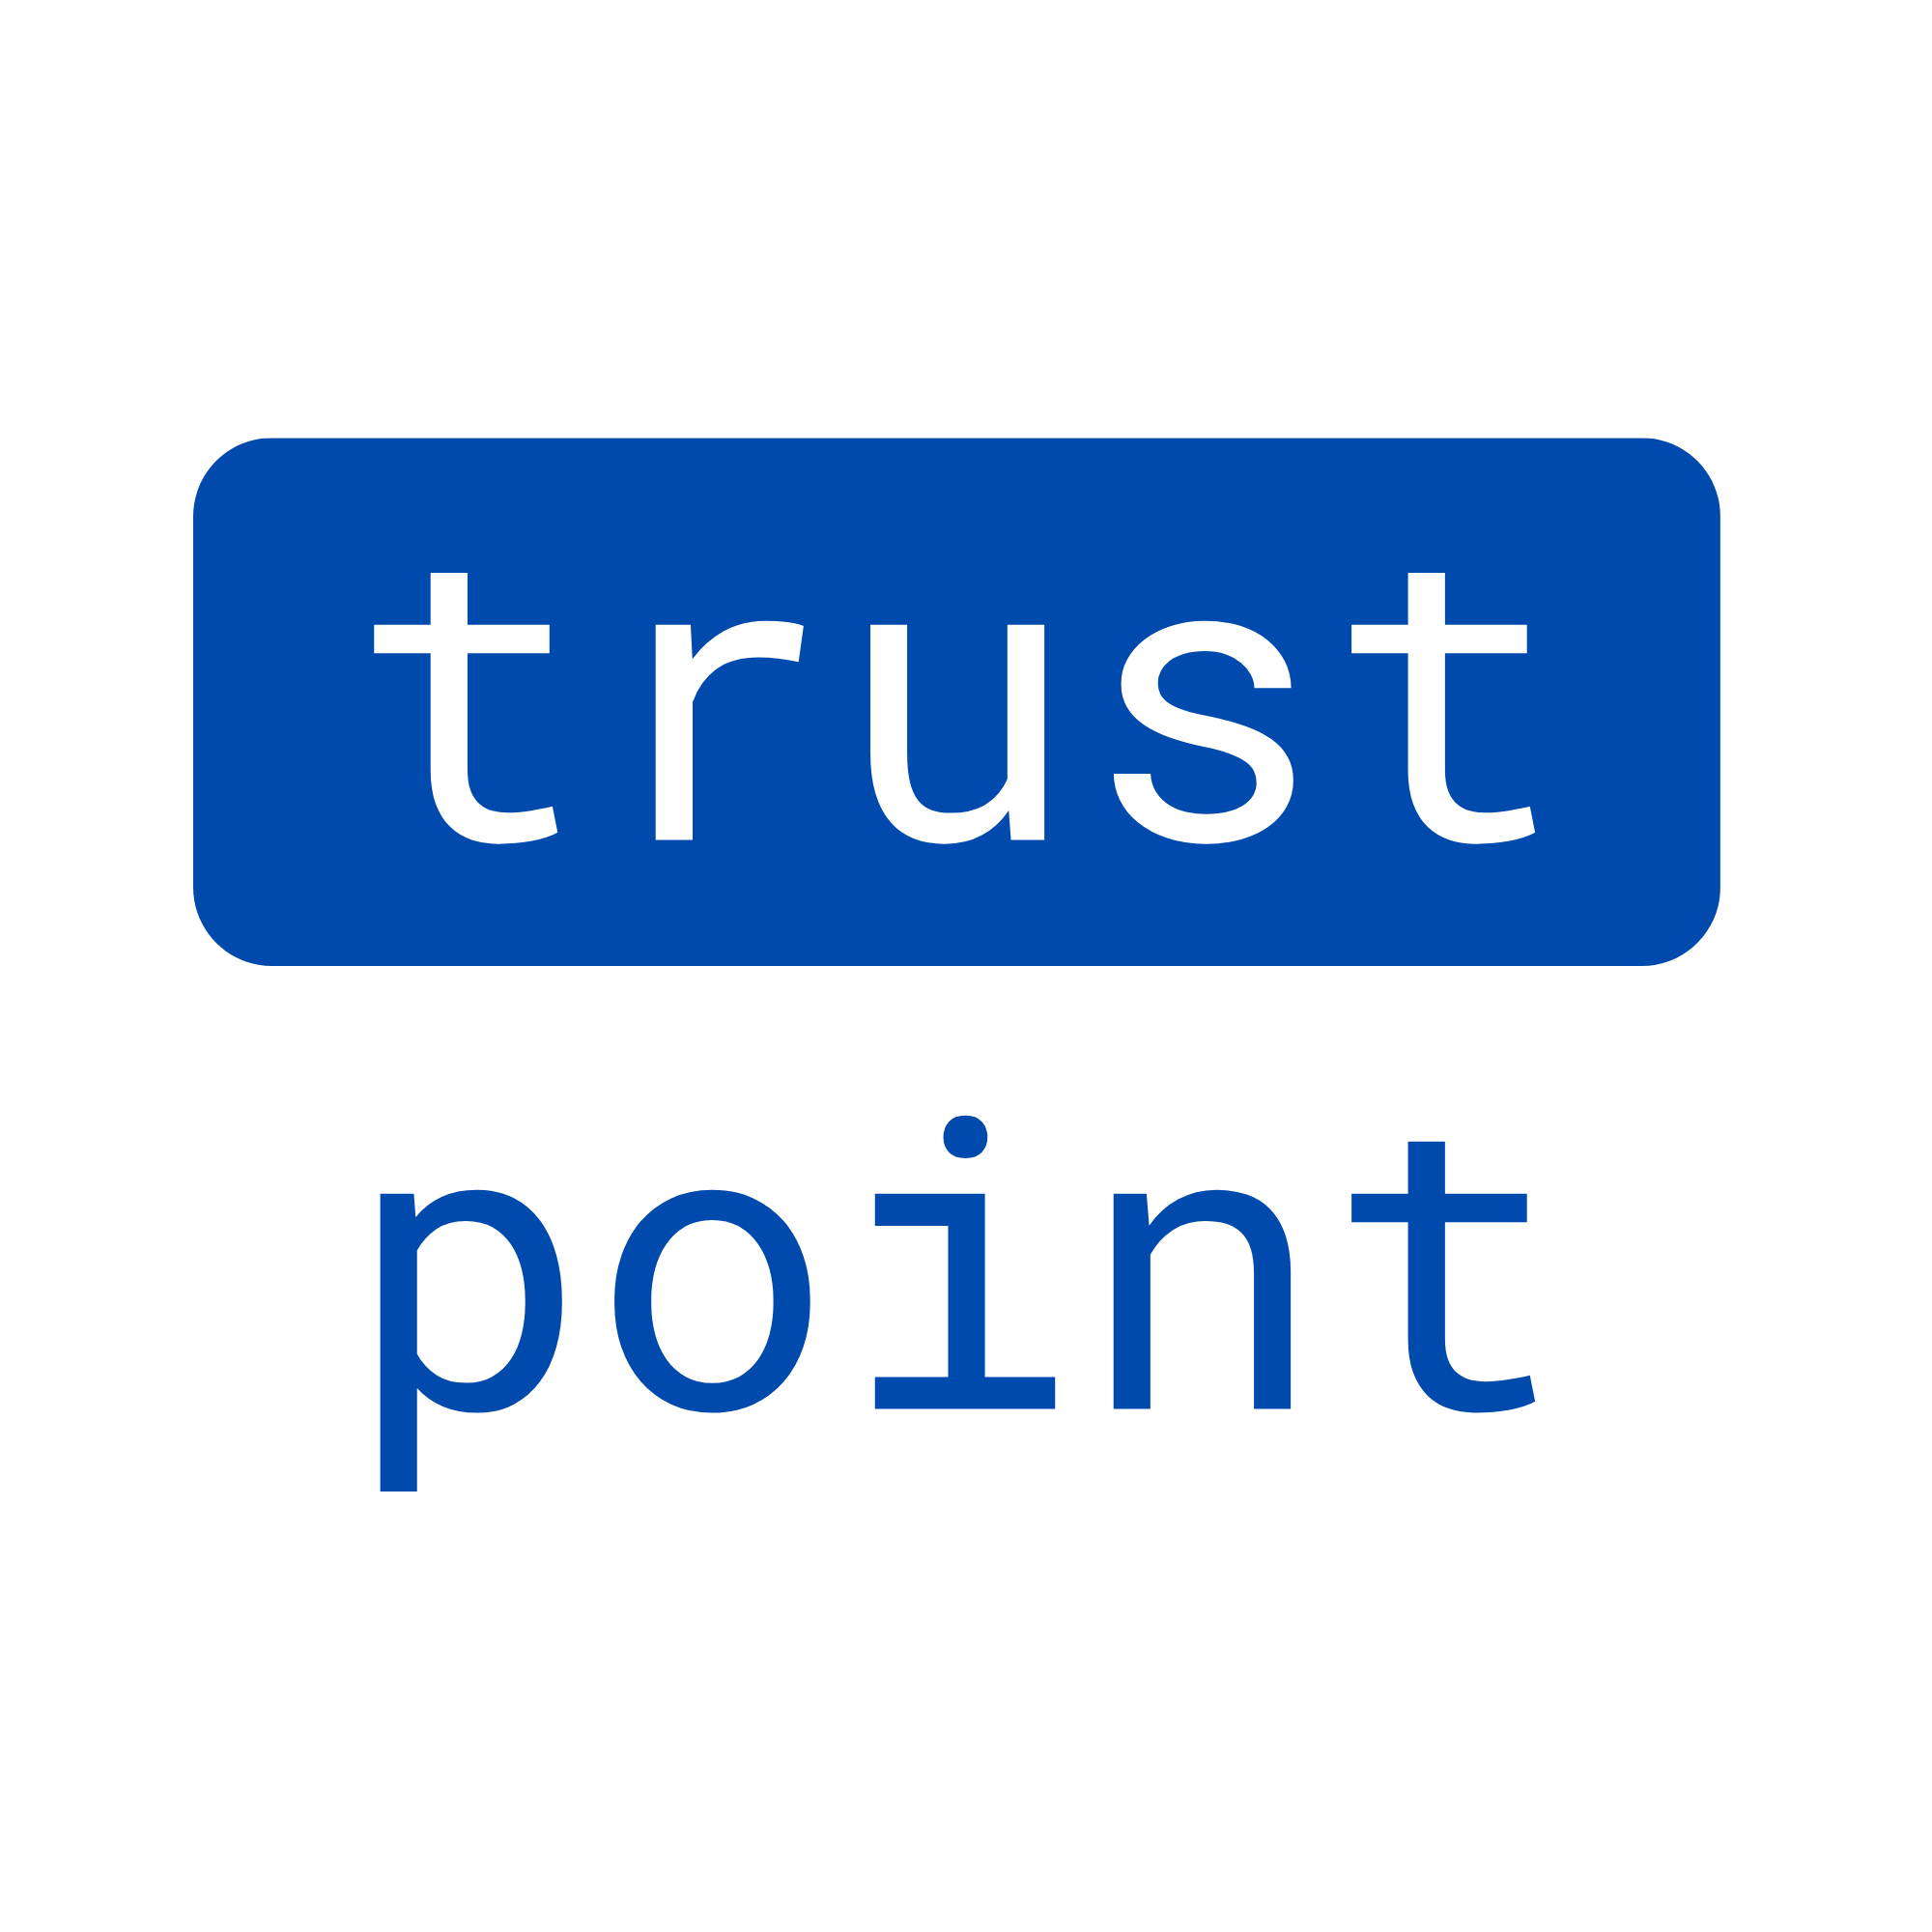 Trustpoint